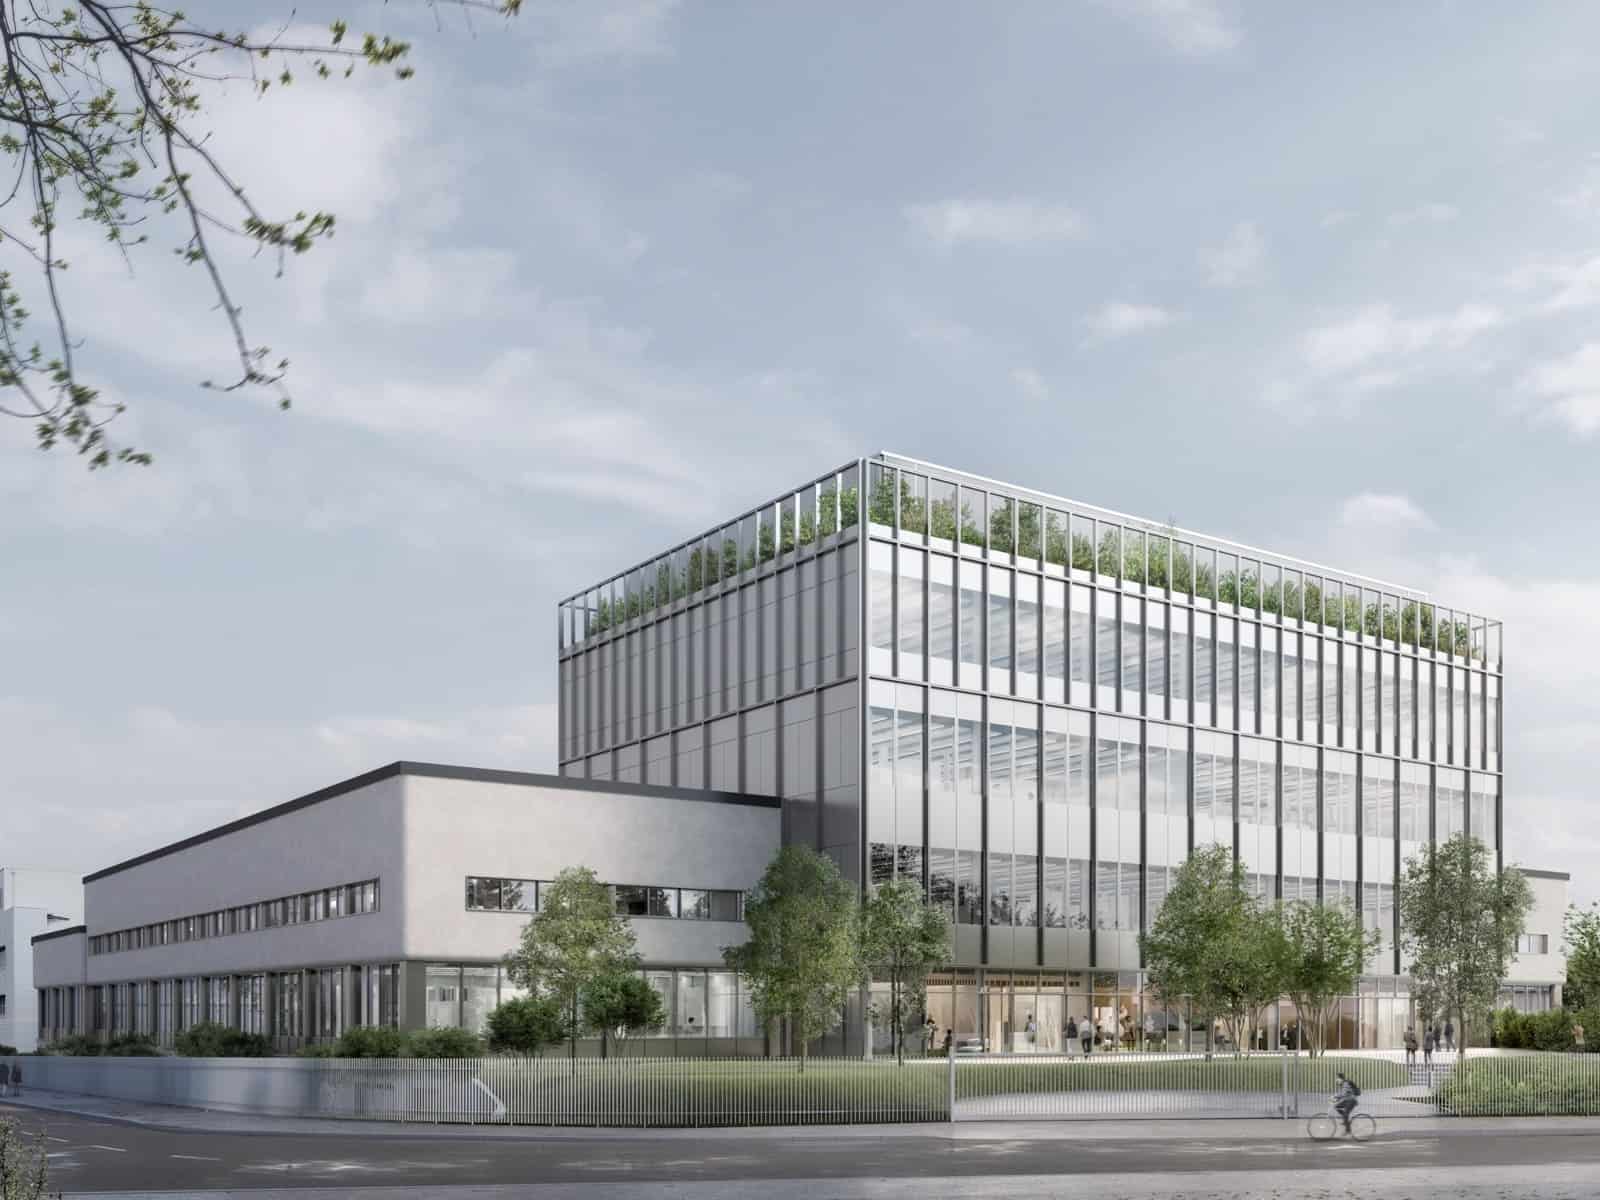 Audemars Piguet Produktionsstätte in Genf-Meyrin. Rendering der künftigen Fassade